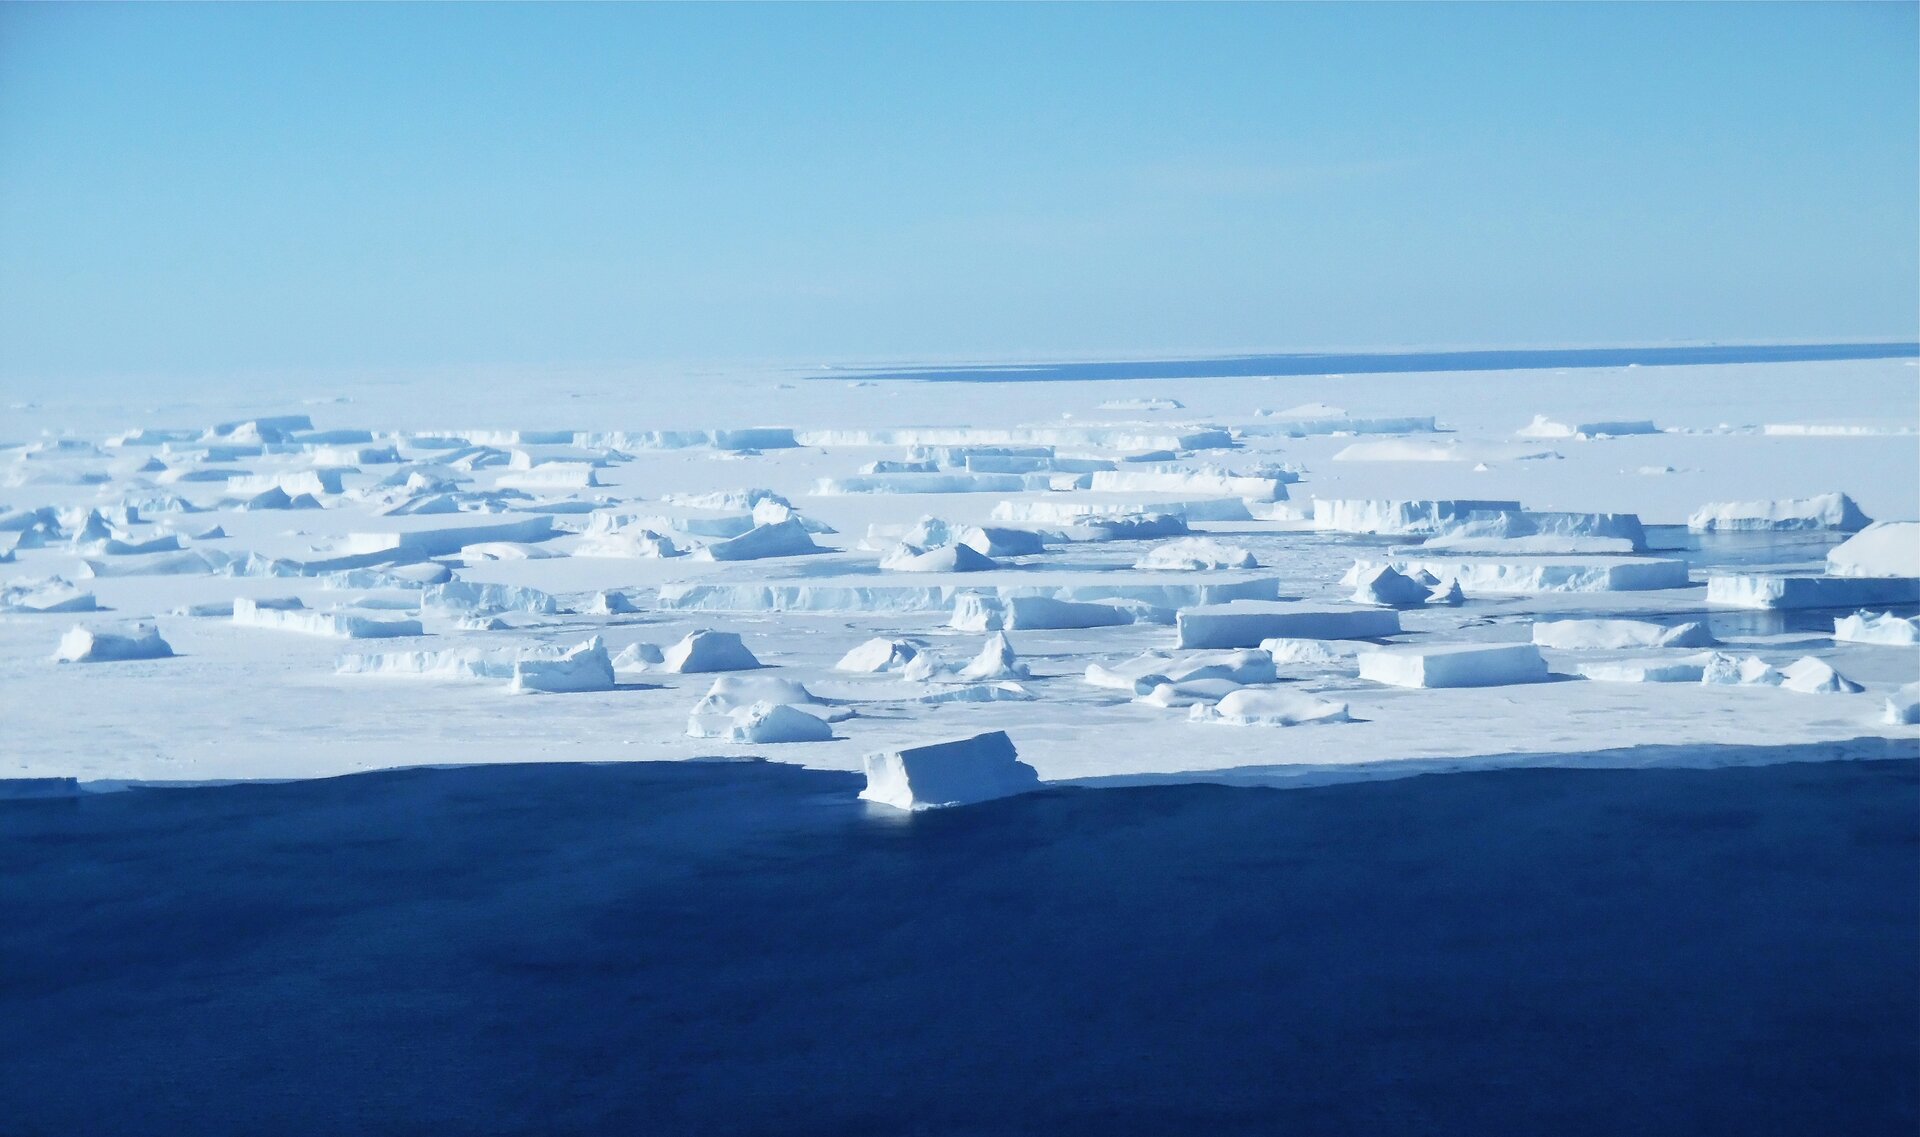 Fotografia w odcieniach bieli i błękitu przedstawia krajobraz lodowej pustyni na Antarktydzie. Na pierwszym planie płaszczyzna wody. Gdzieniegdzie leżą fragmenty lodu.